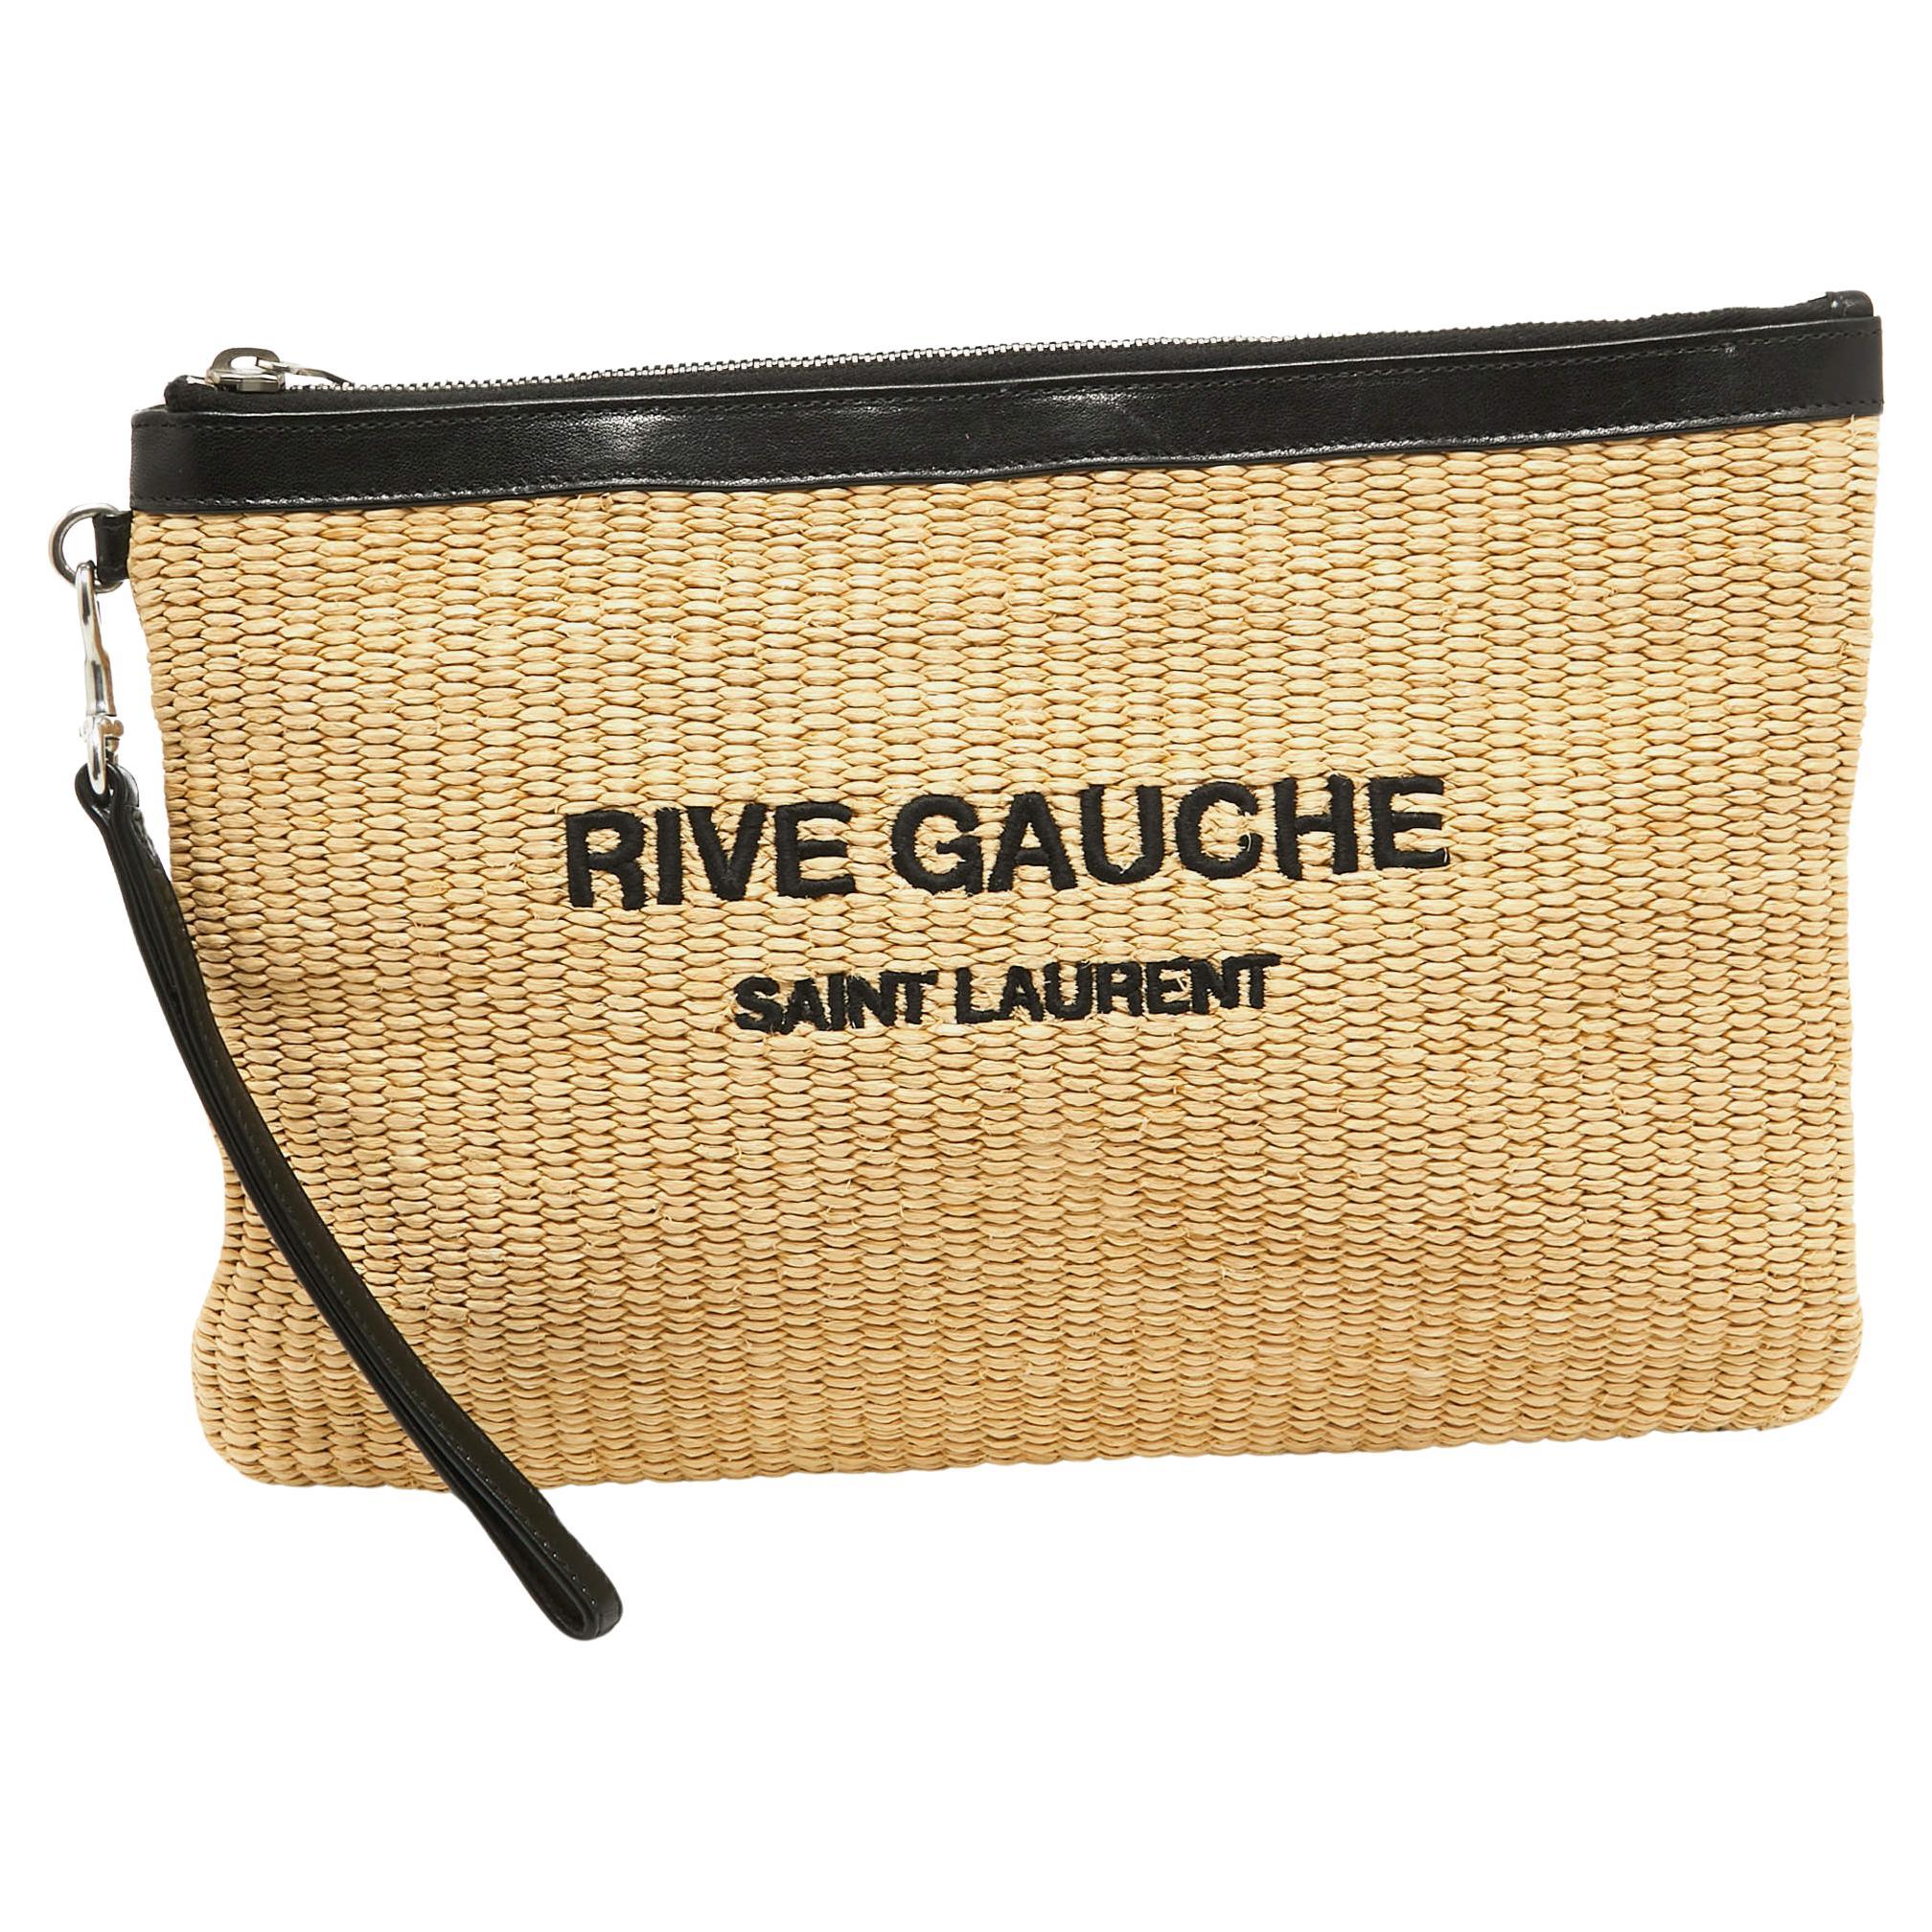 Saint Laurent Beige/Black Raffia and Leather Rive Gauche Zip Wristlet Pouch